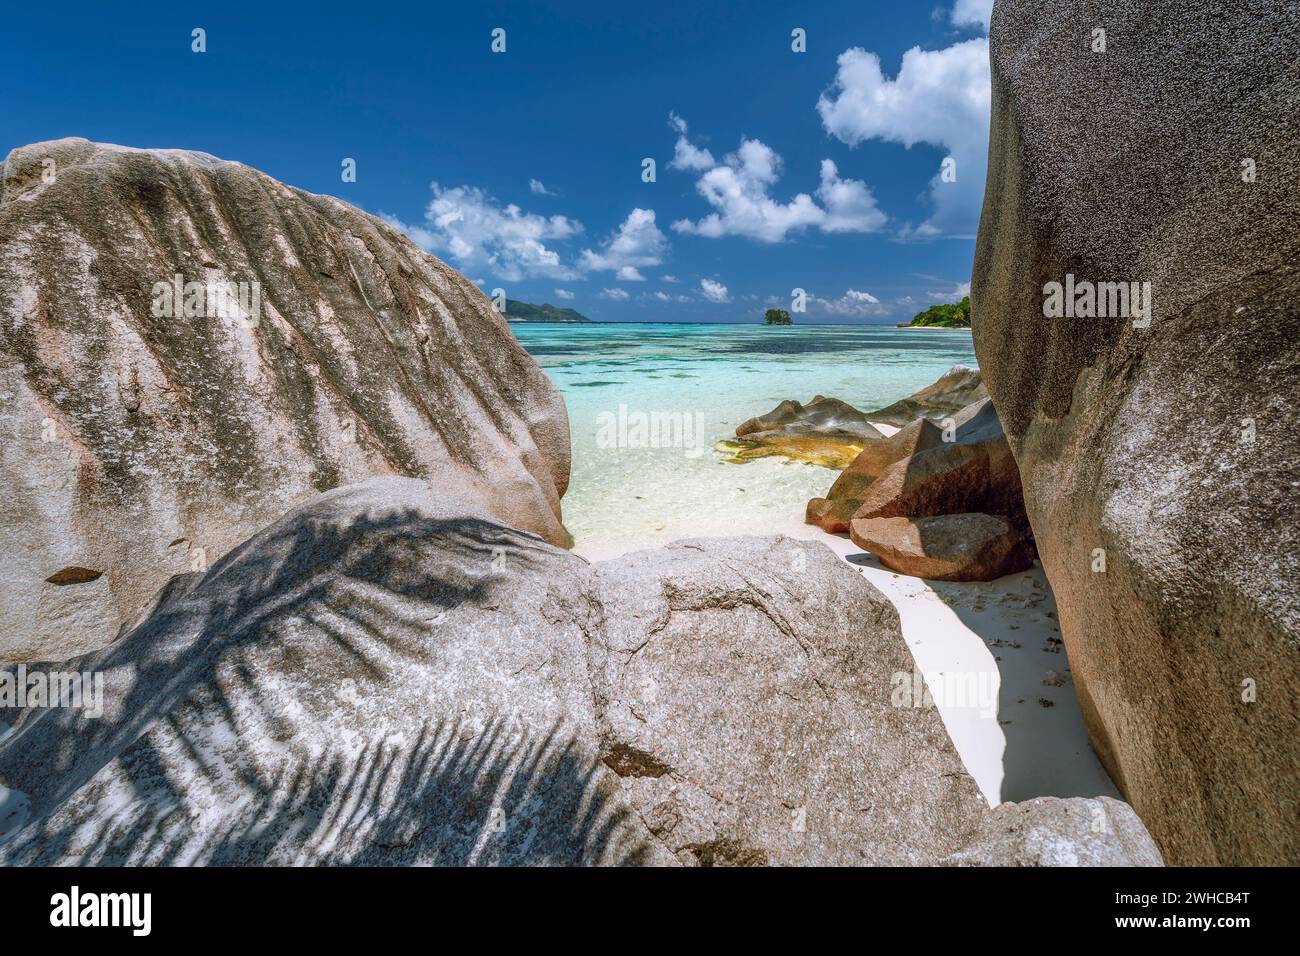 Anse Source d'Argent. Esotica spiaggia tropicale paradisiaca sull'isola la Digue alle Seychelles. Enormi massi di granito e laguna blu. Foto Stock